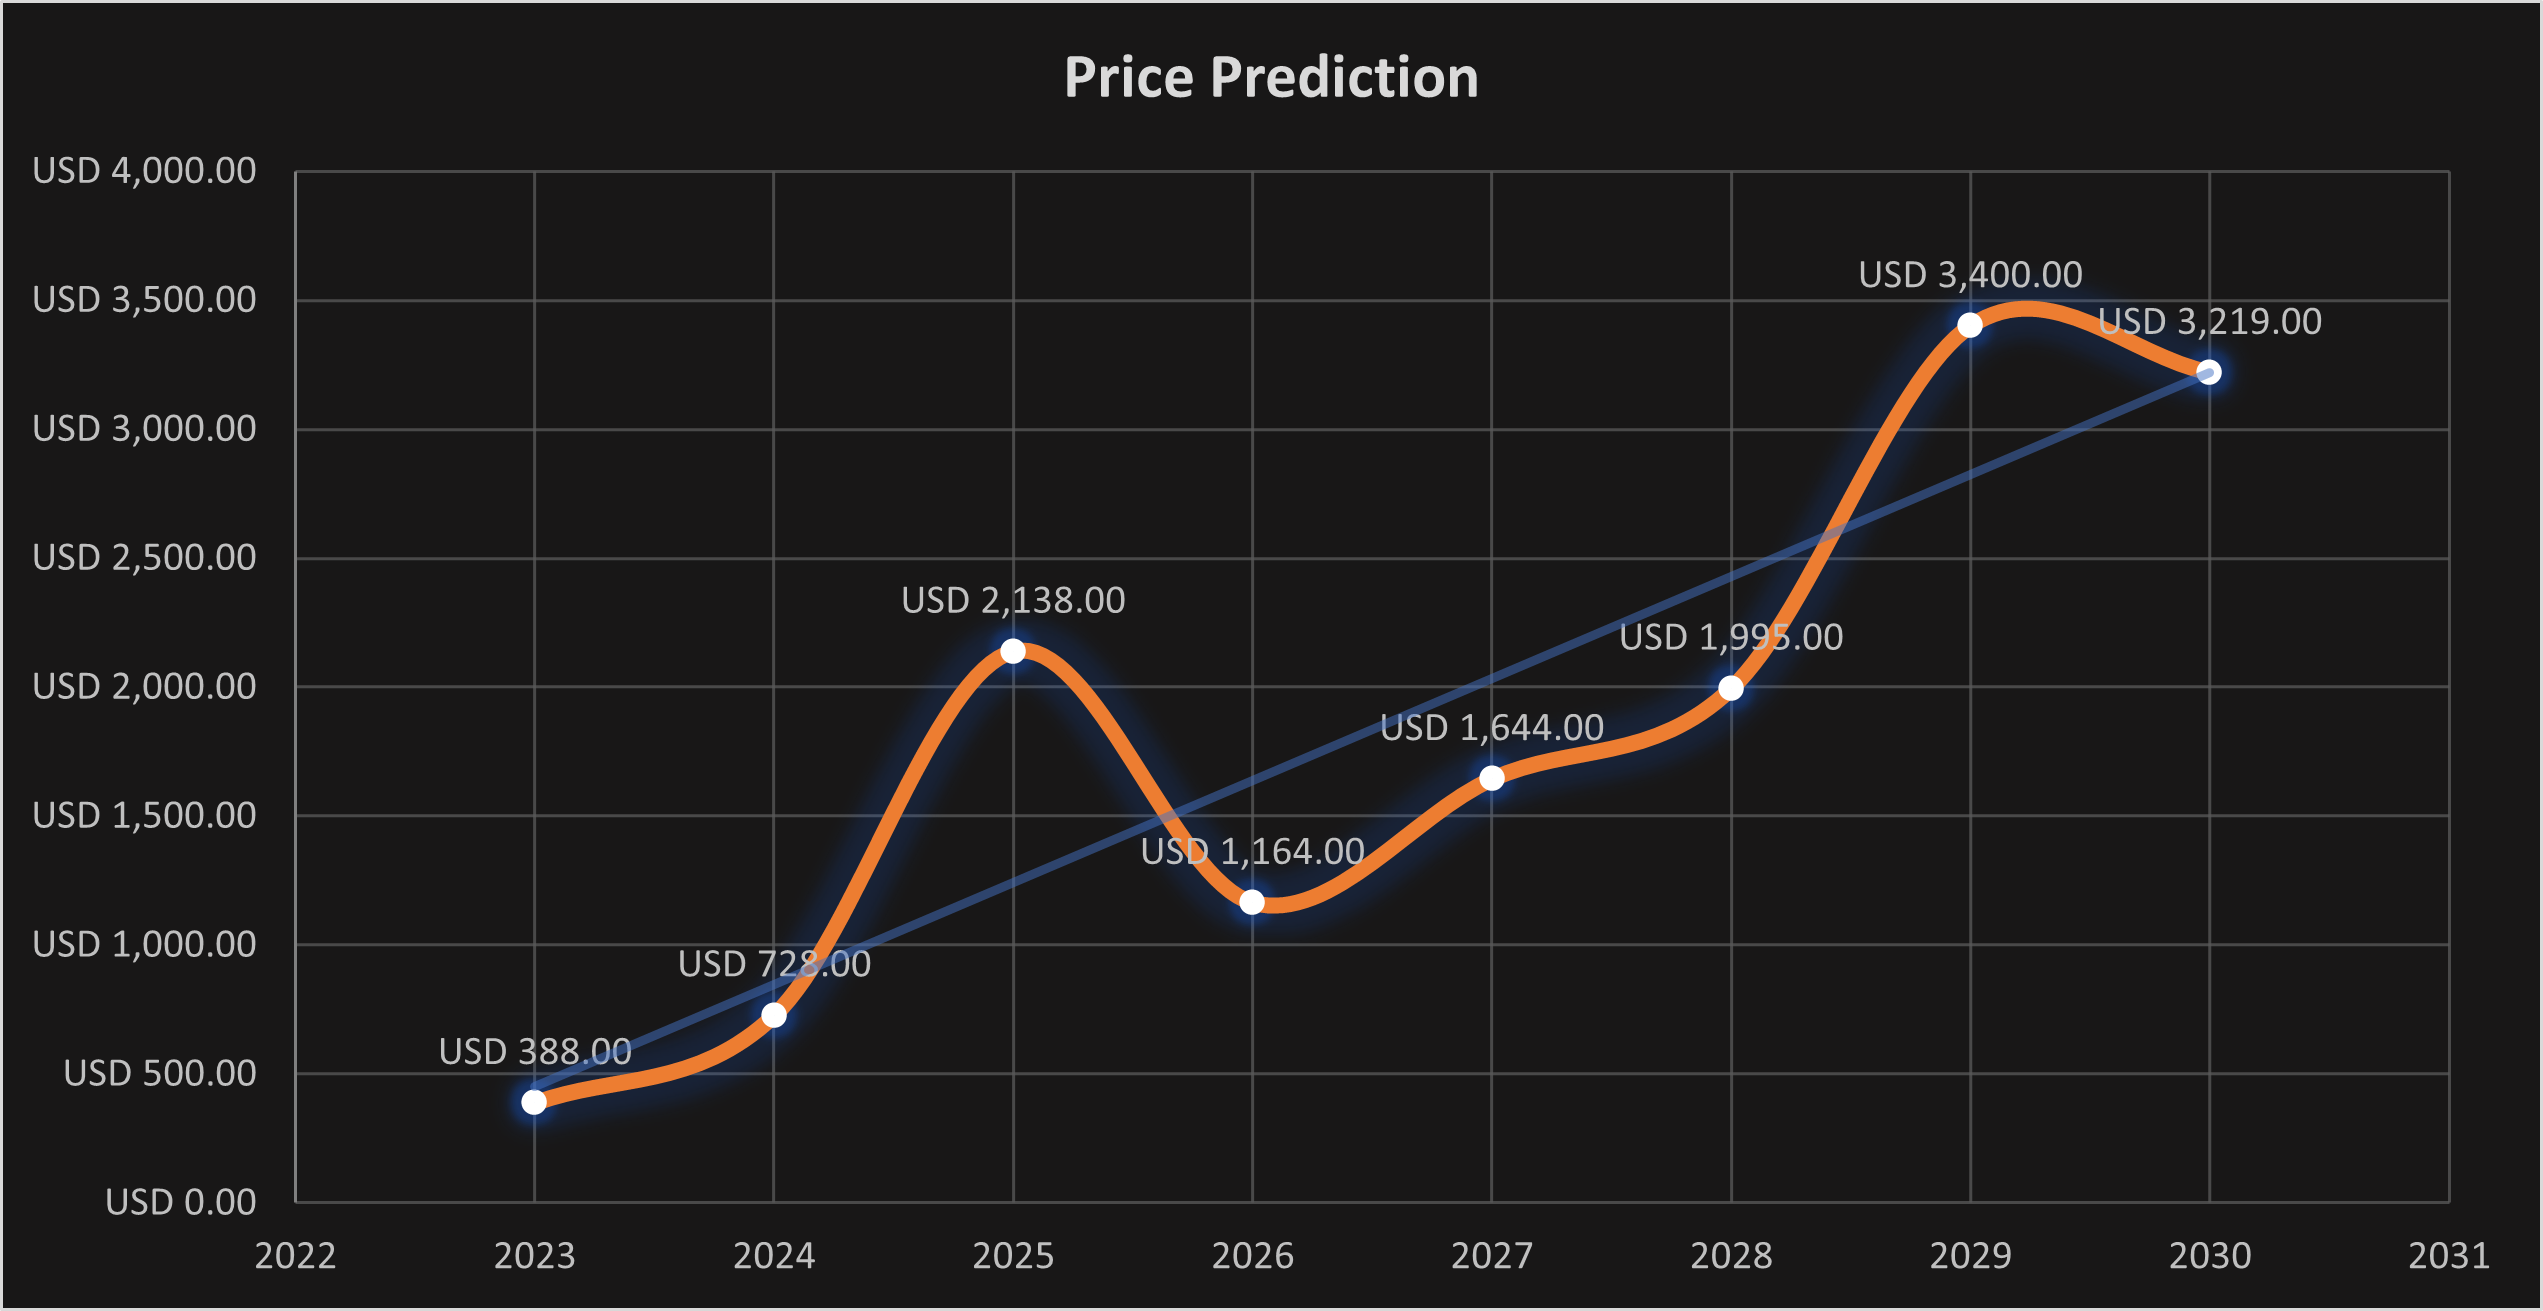 Coinbase (COIN) stock price predictions 2023, 2025, 2030